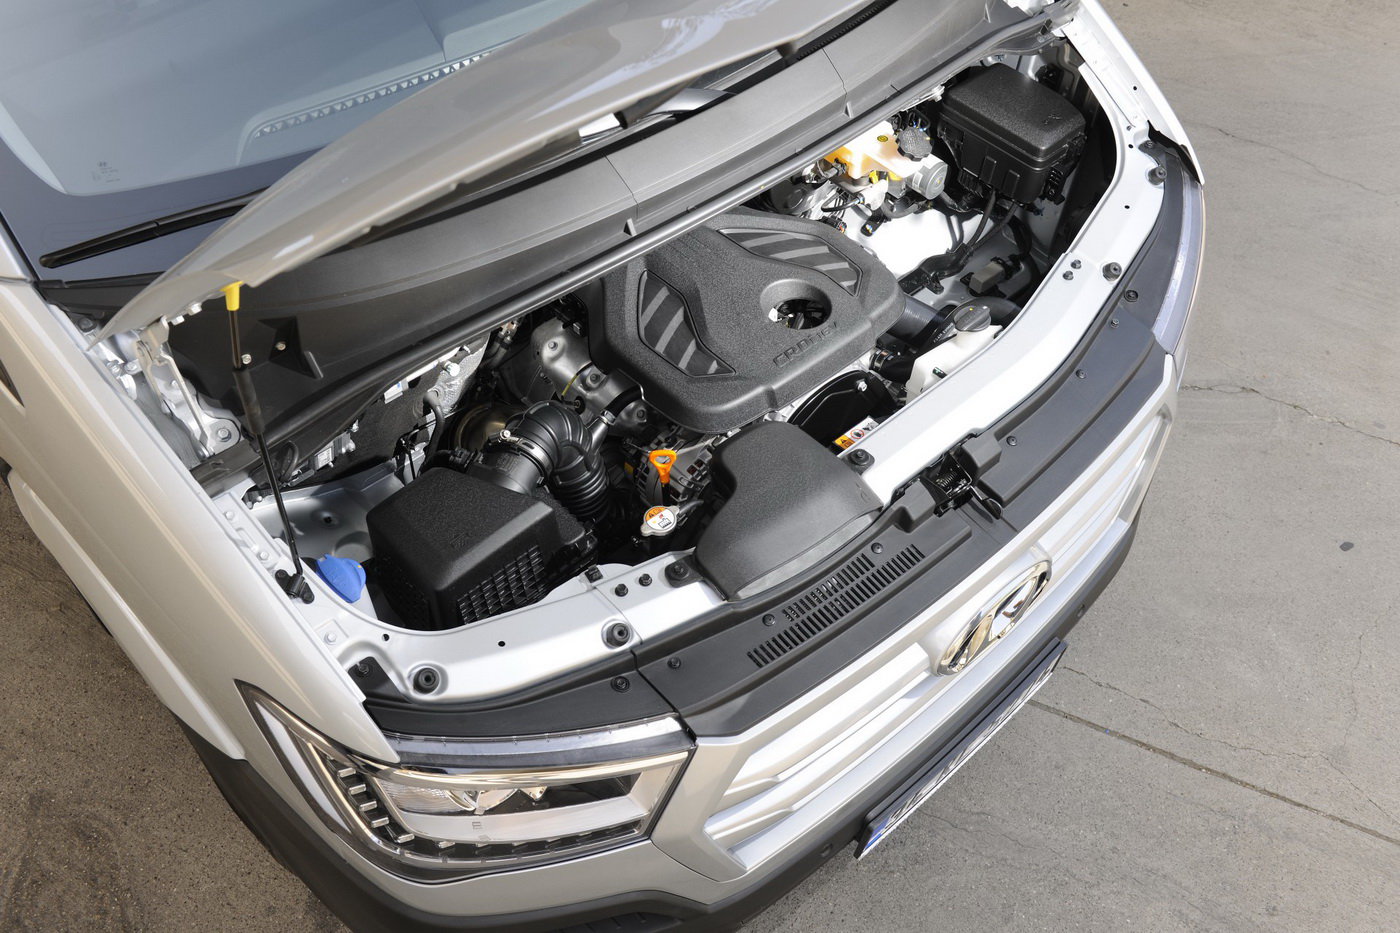 Hyundai H350 má výkonný a zároveň úsporný turbodiesel propojený s šestistupňovou manuální převodovkou.